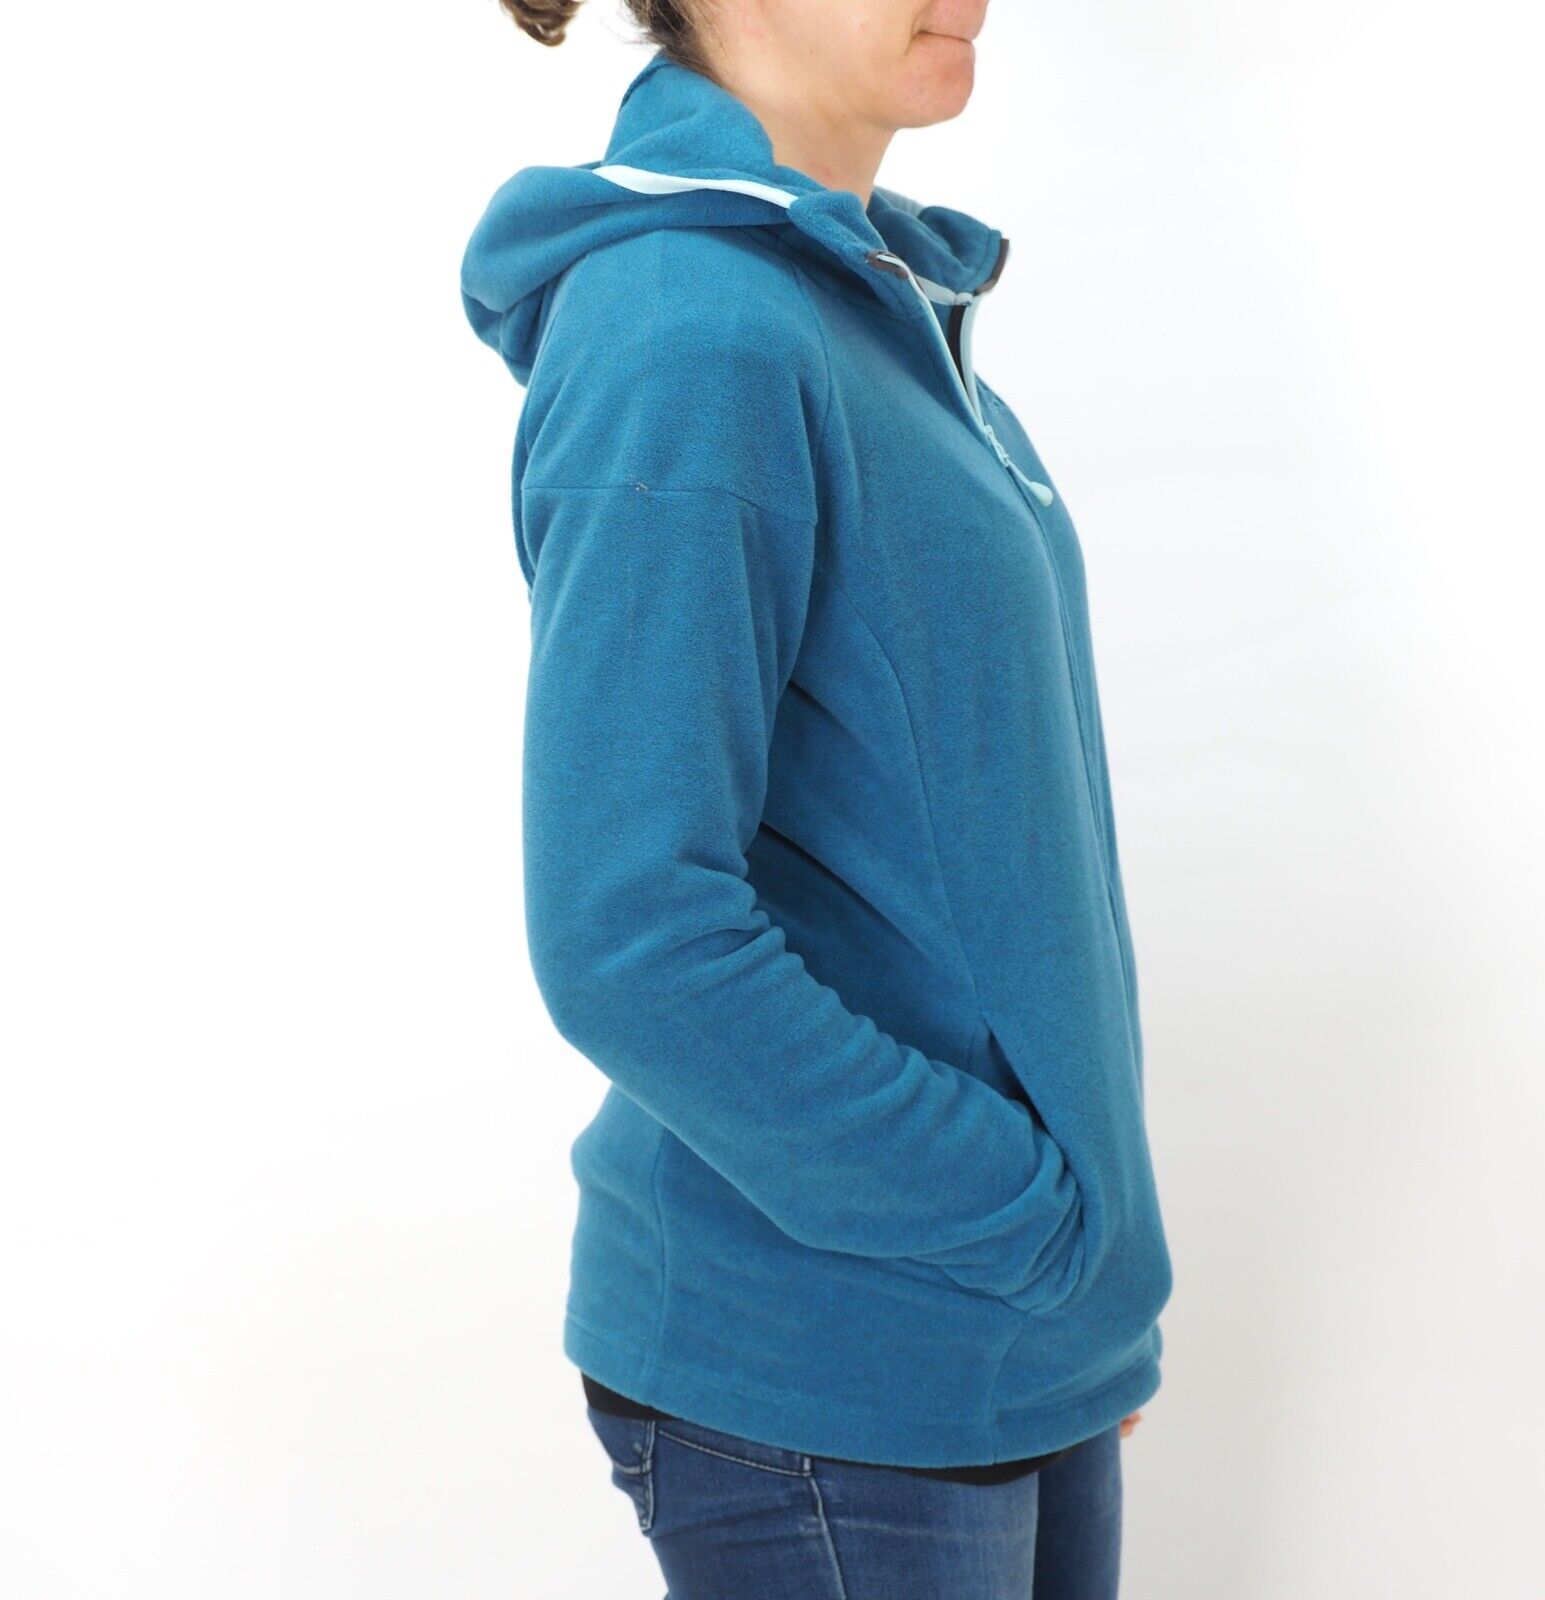 Womens Jack Wolfskin 5007701 Moroccan Blue Zip Up Warm Fleece Hiking Sweatshirt - London Top Style